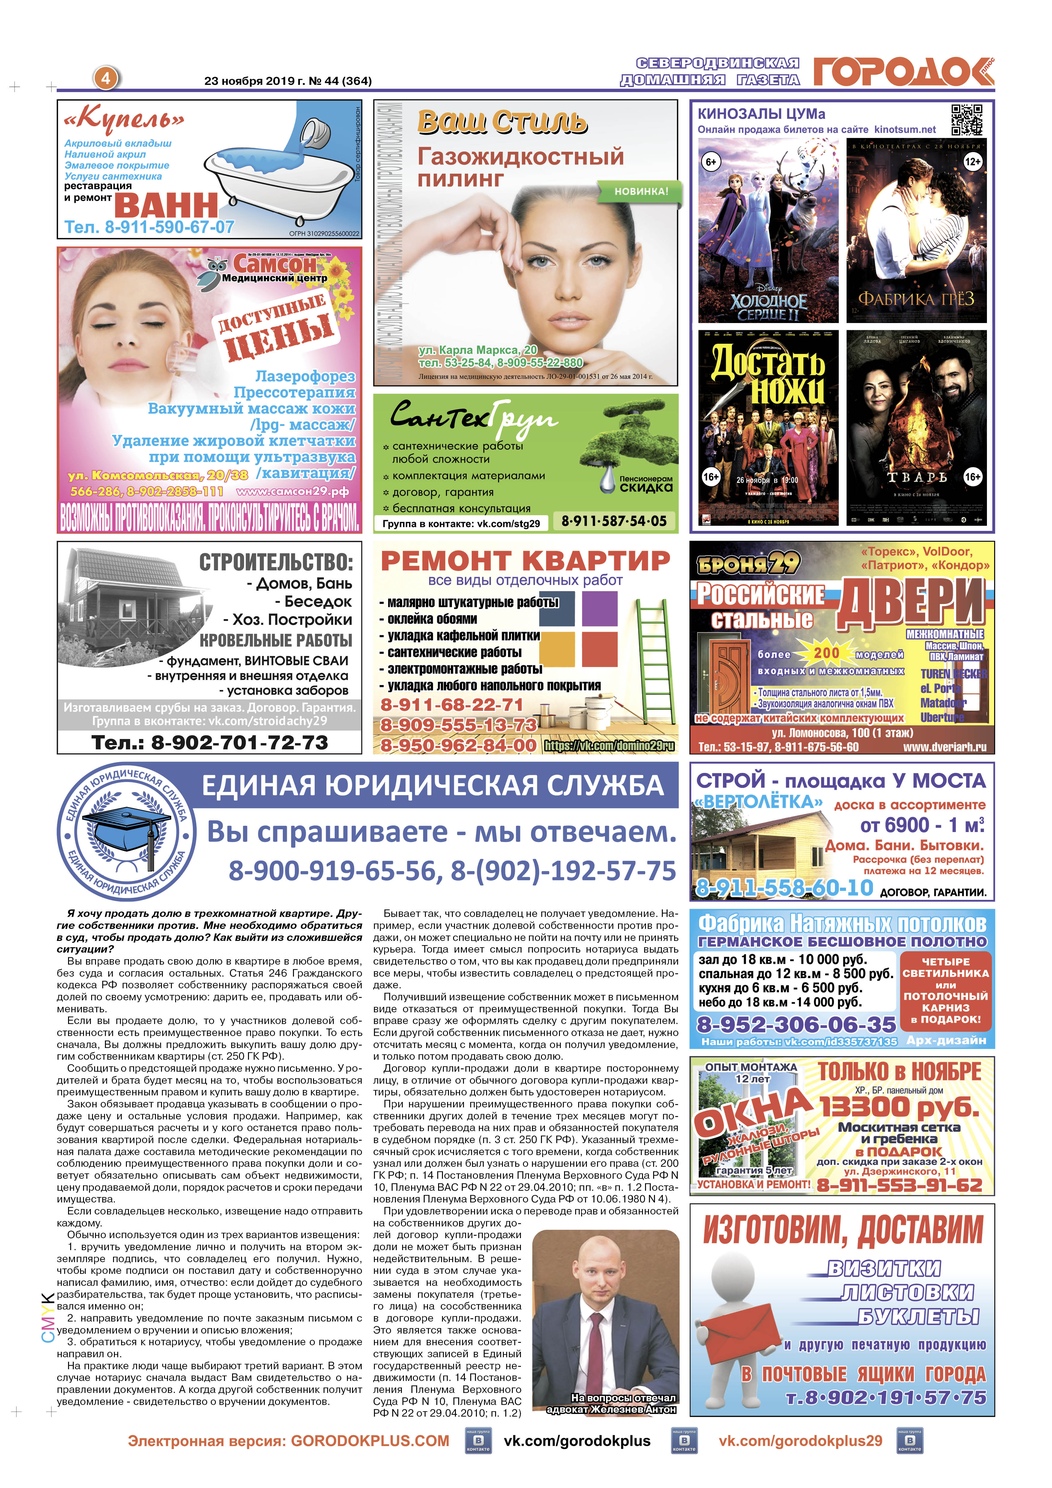 Городок плюс, выпуск номер 44 от 25 ноября 2019 года, страница 4.